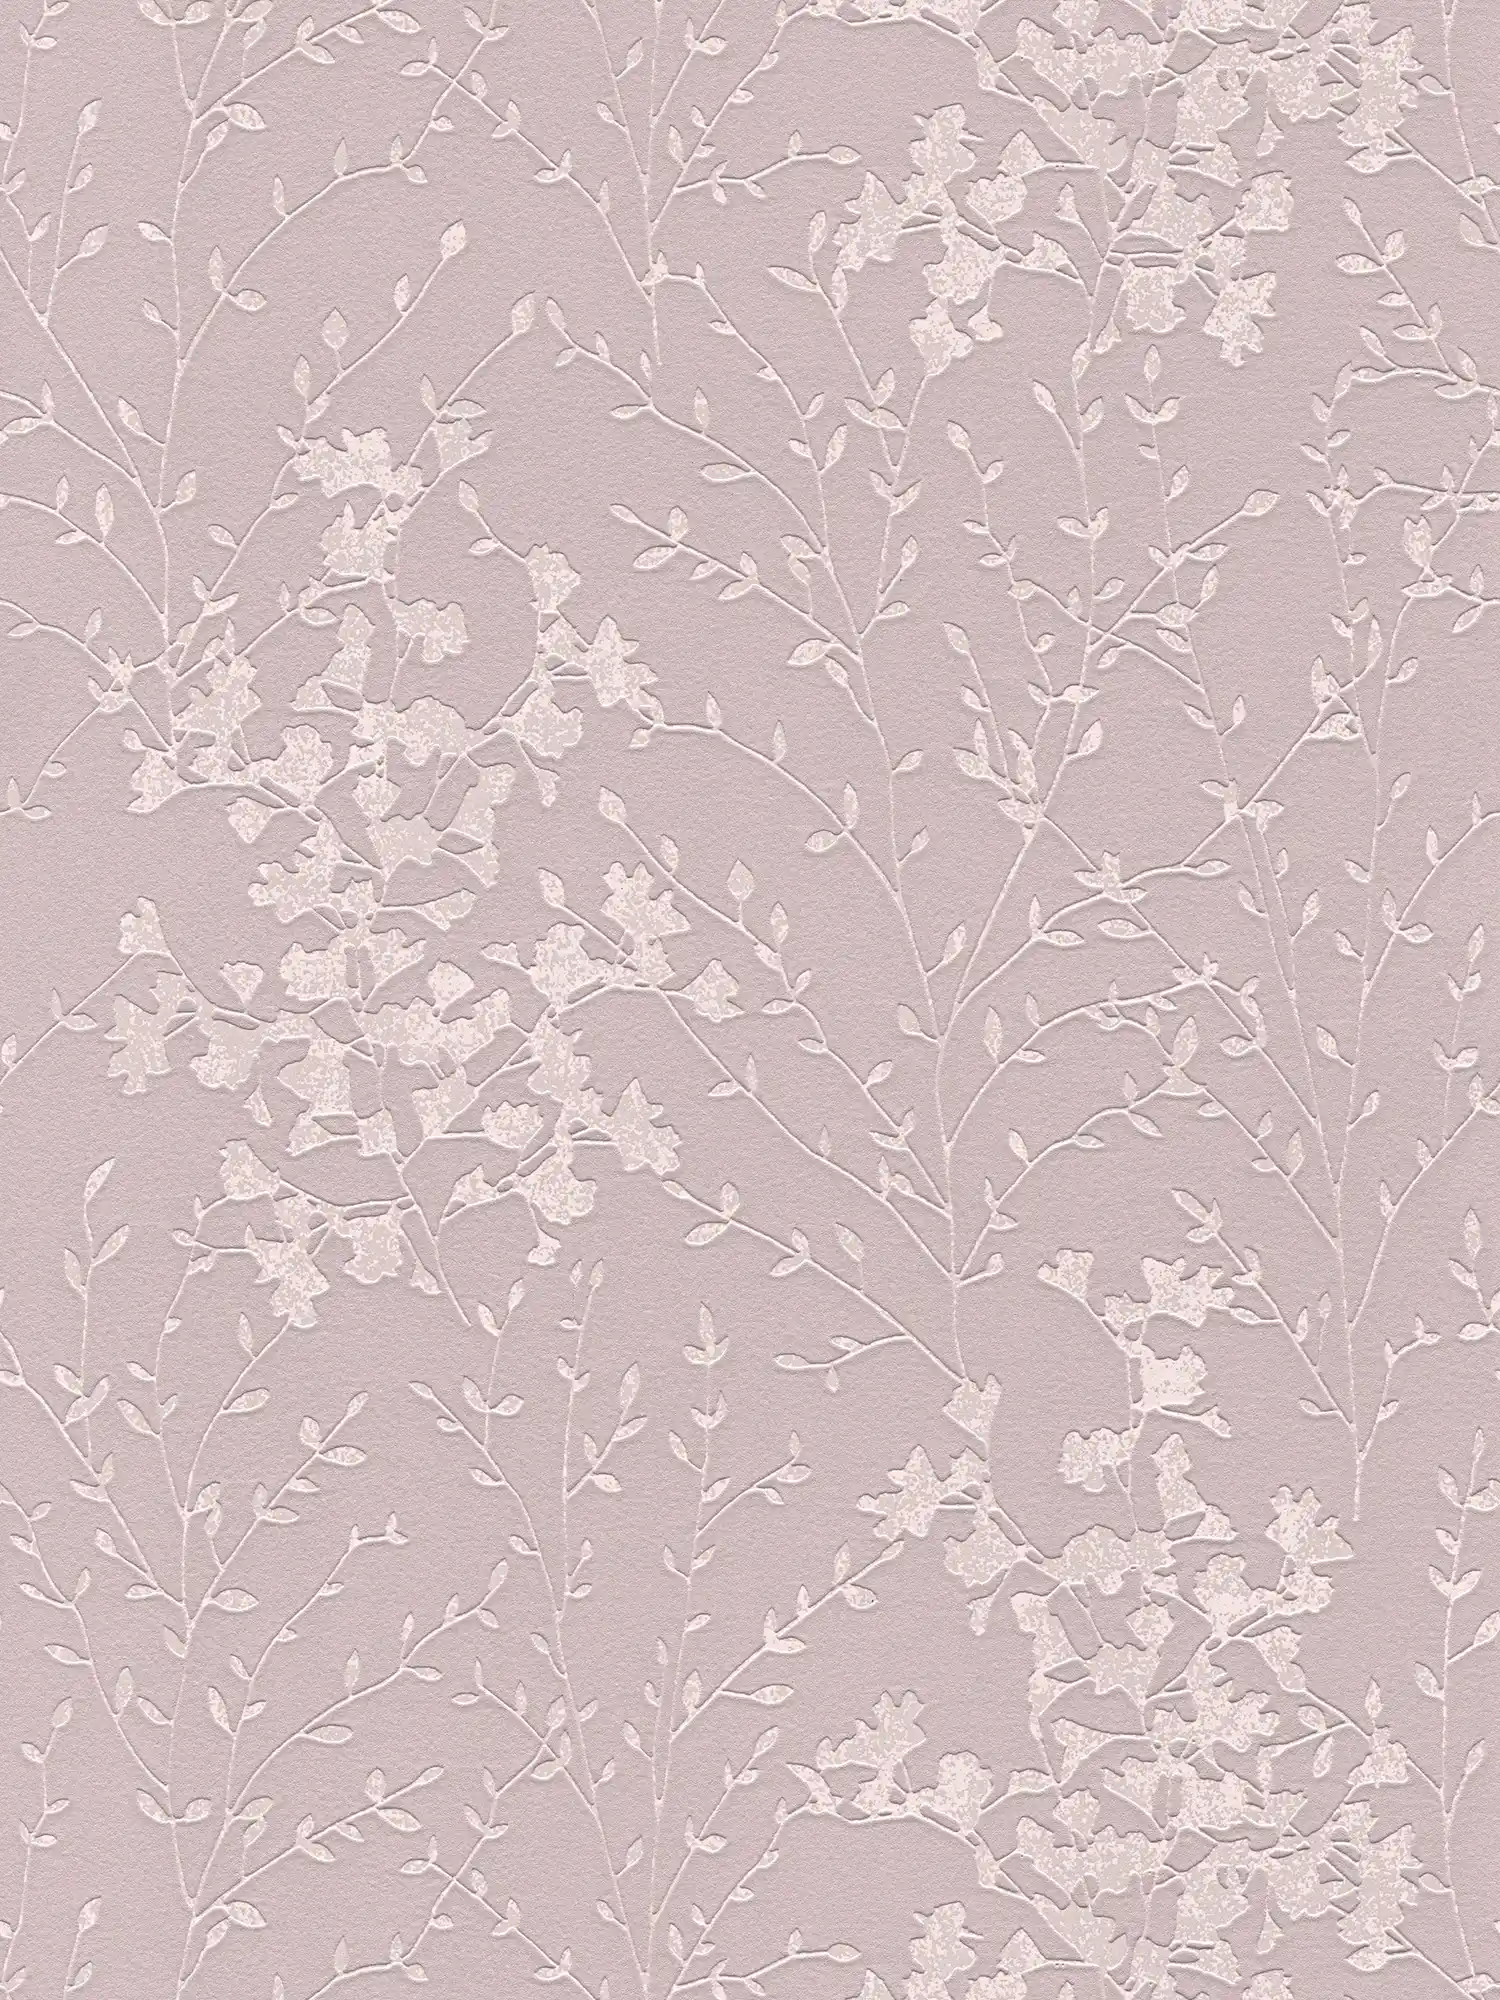 Pink wallpaper with tendril pattern & metallic effect - metallic, pink
